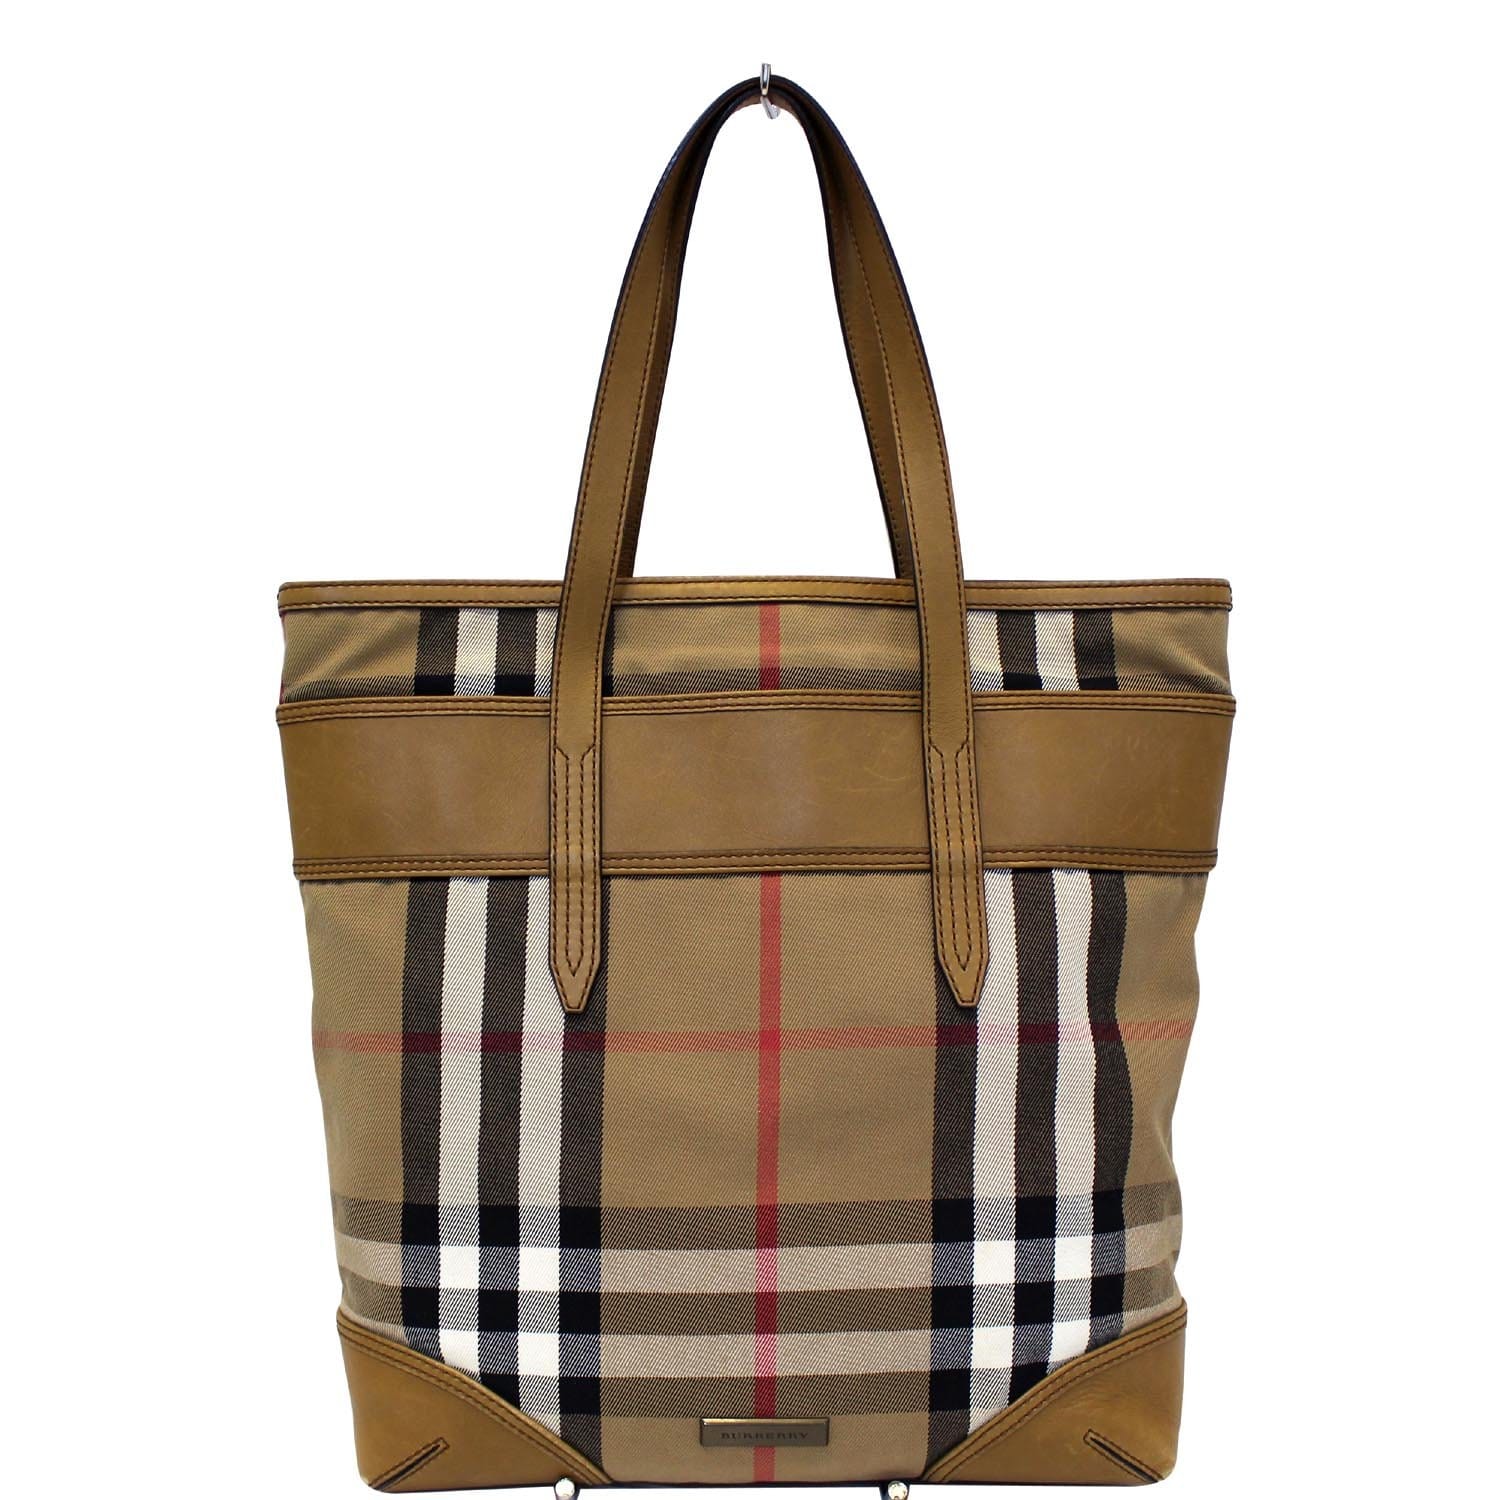 Preloved,thrift, designer bags - Original vintage Burberry bag